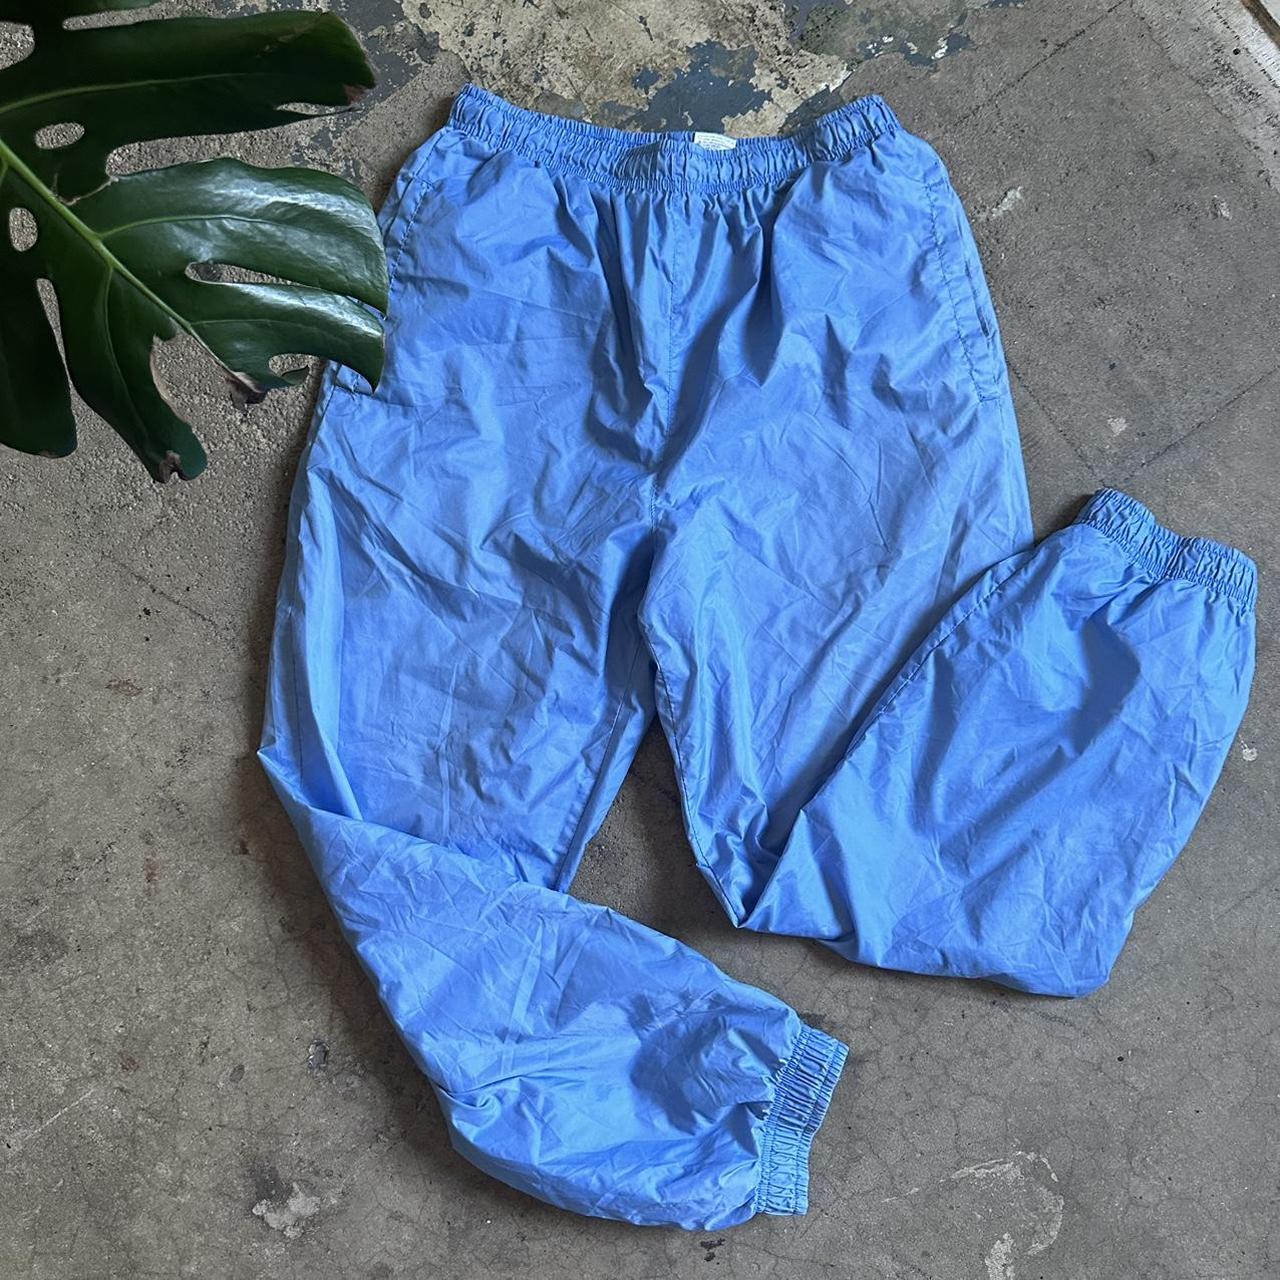 Periwinkle Athletic Works waterproof pants ⭐️ Did - Depop